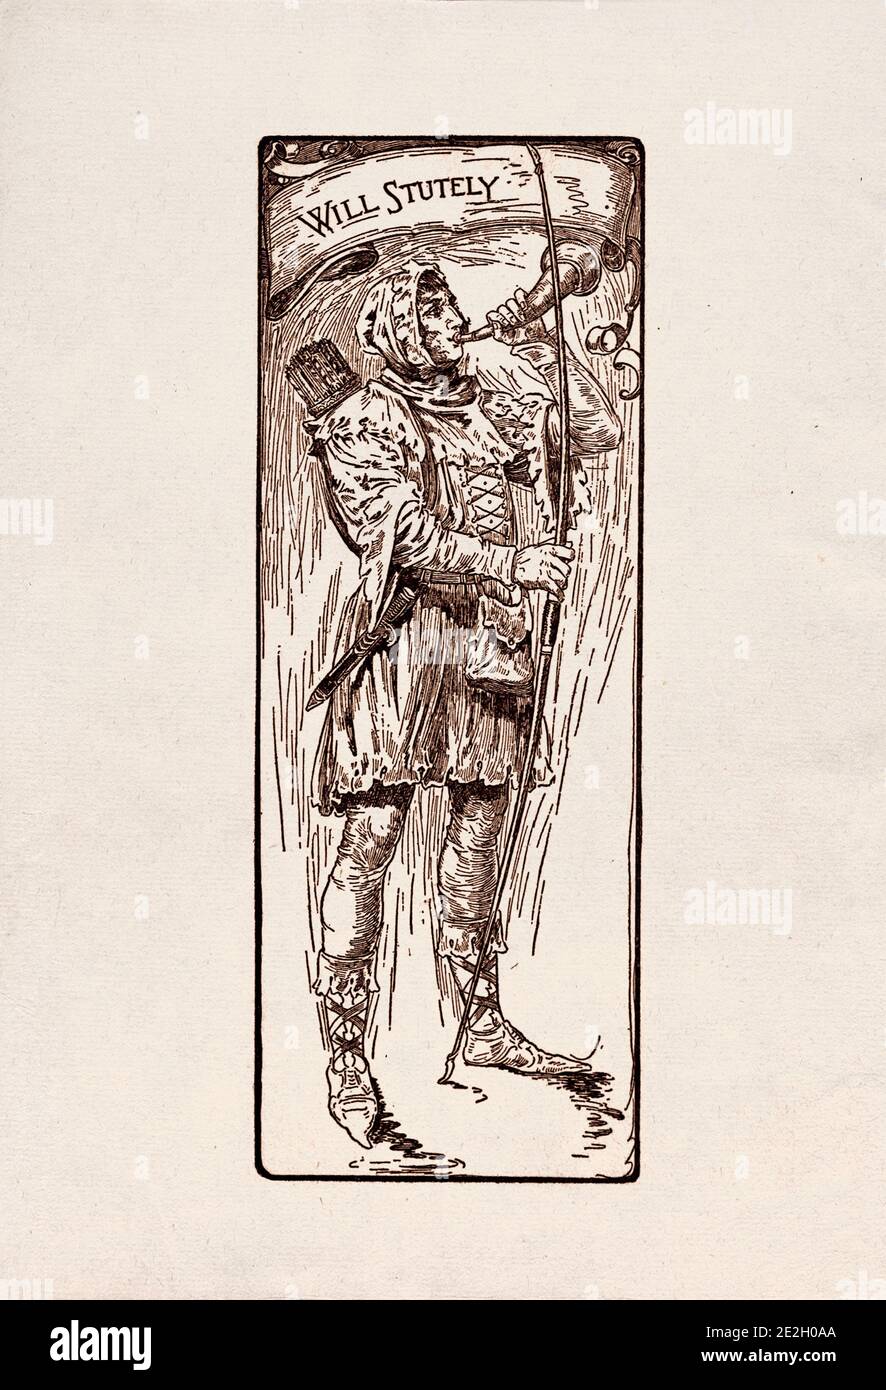 Gravure antique de personnages littéraires du folklore anglais des légendes Robin des Bois. Va de façon aiguë. Par Louis Rhead. 1912 Banque D'Images